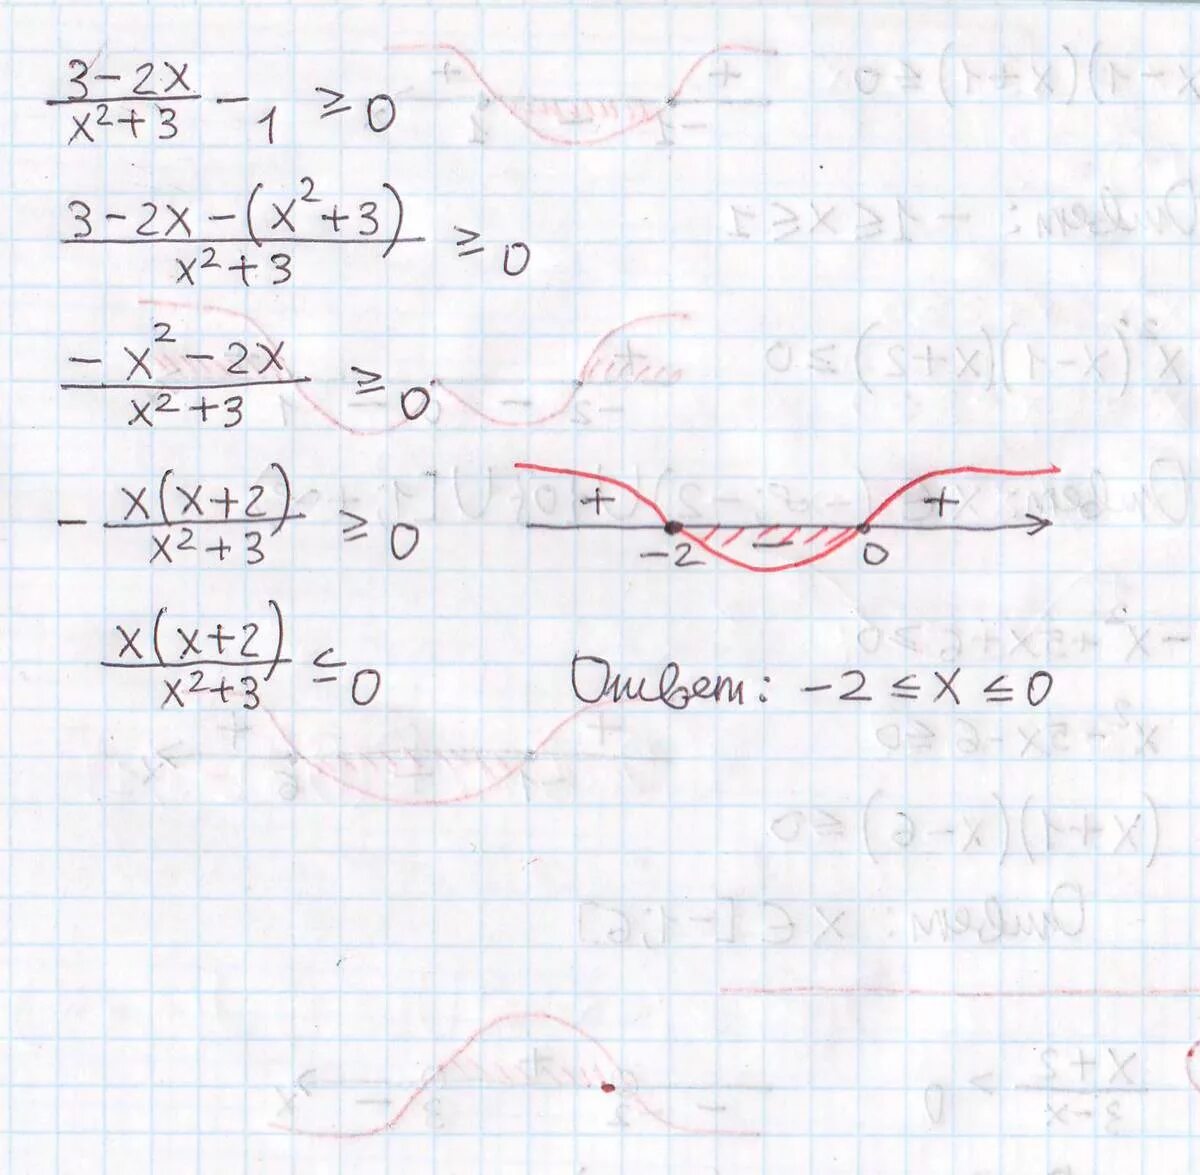 1x 1 2x 2 1 0. -X^2-3x+1=0. (1-X^3)^2(X^2-5x)=<0. X^3-X^2-X+1=0. 0.2 X^2 - 1.6 X + 3.2 = 0 2 = 0.